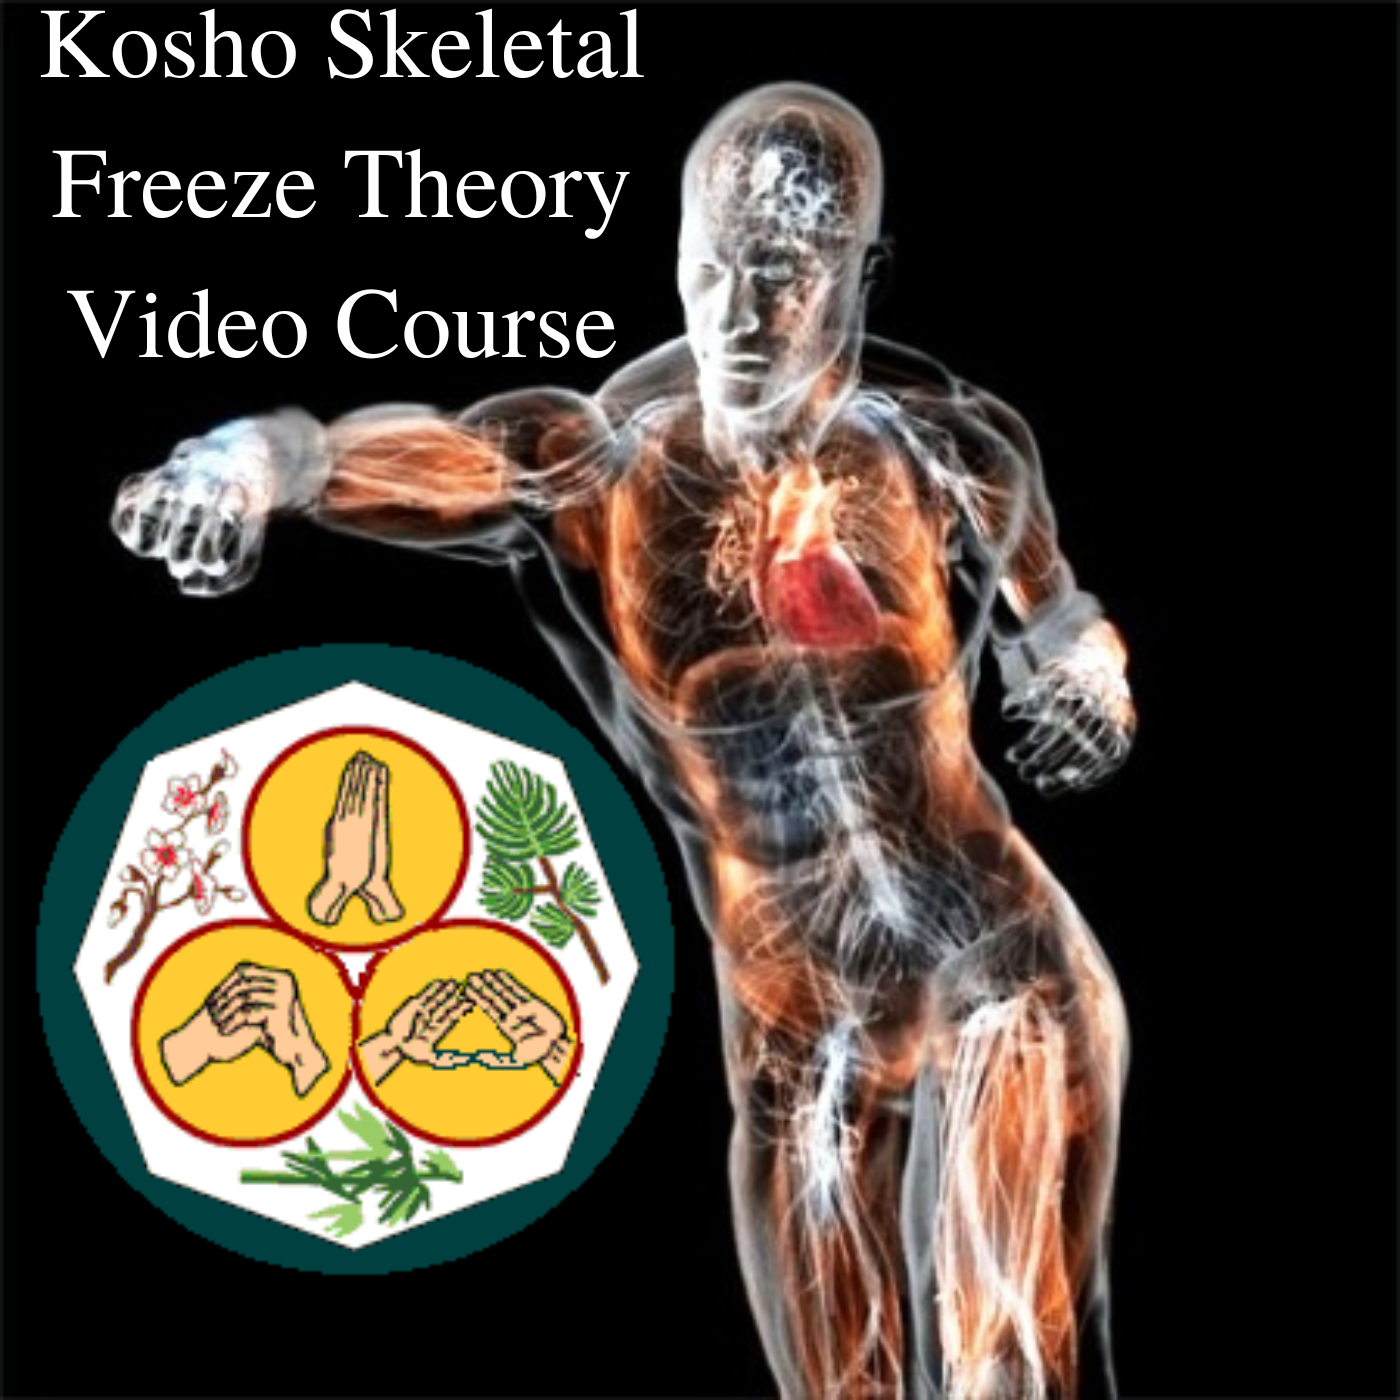 * Kosho Skeletal Freeze Theory